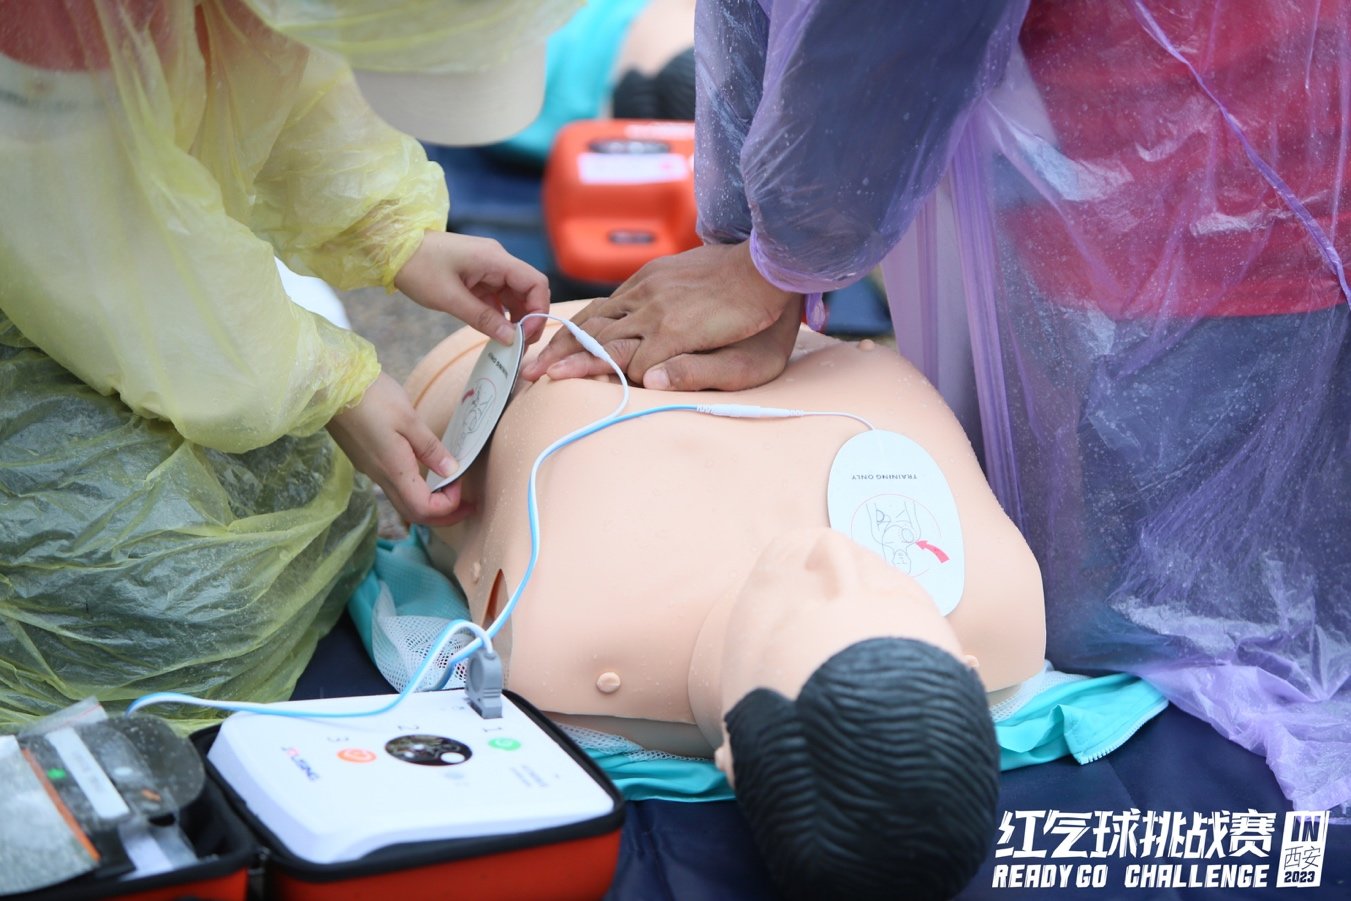 参赛者进行心肺复苏（CPR+AED)任务